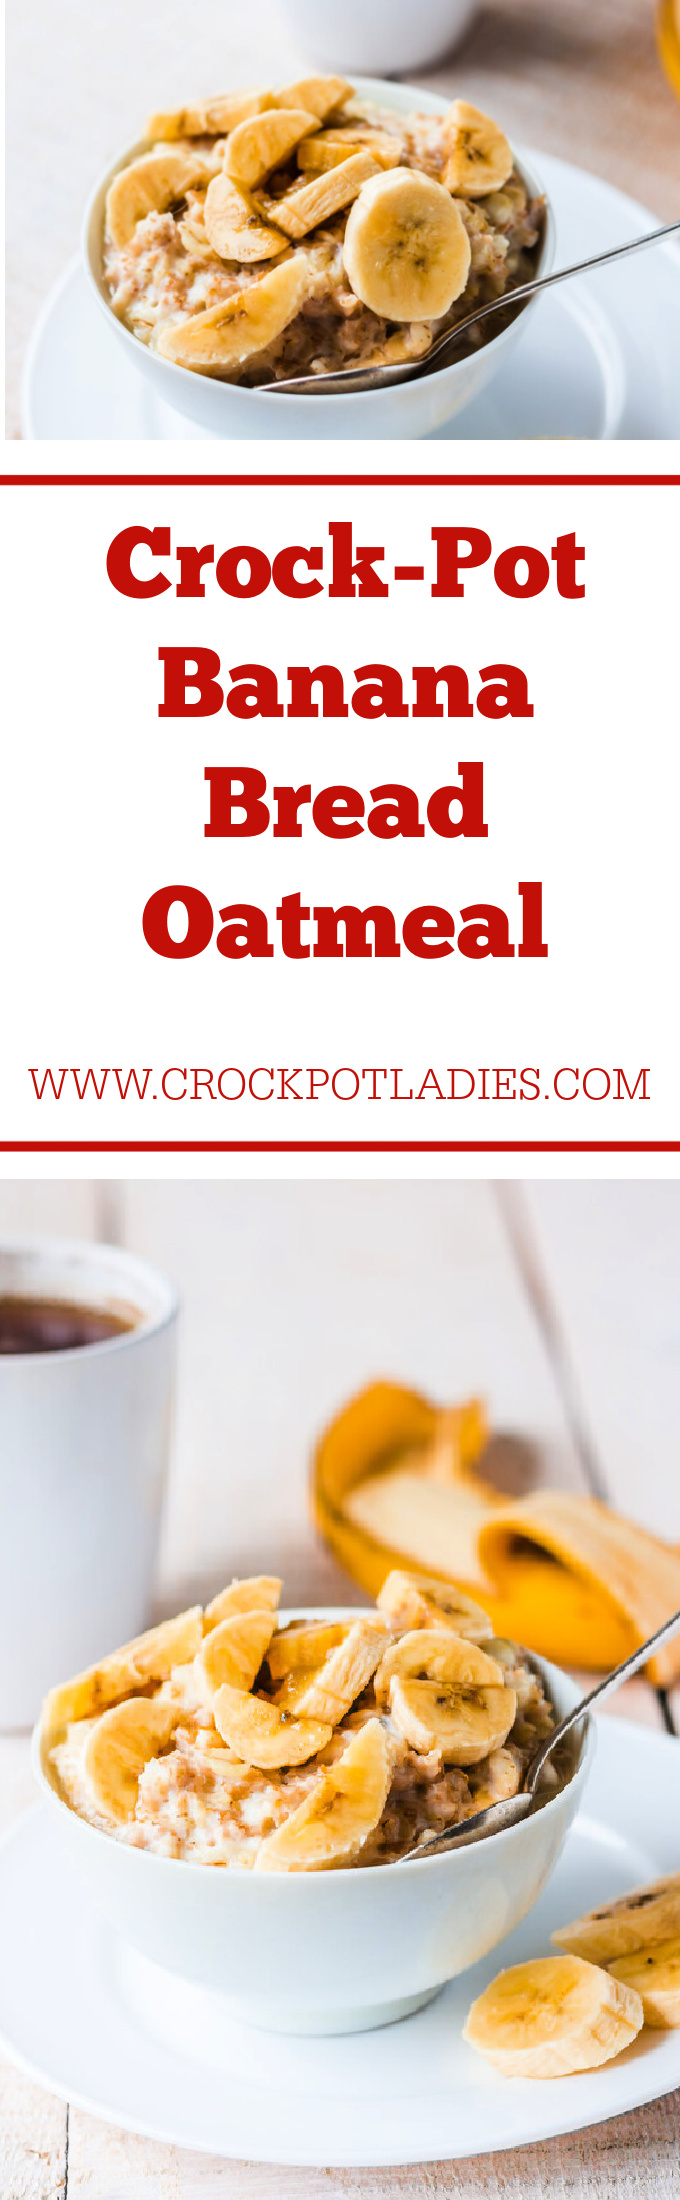 Crock-Pot Banana Bread Oatmeal